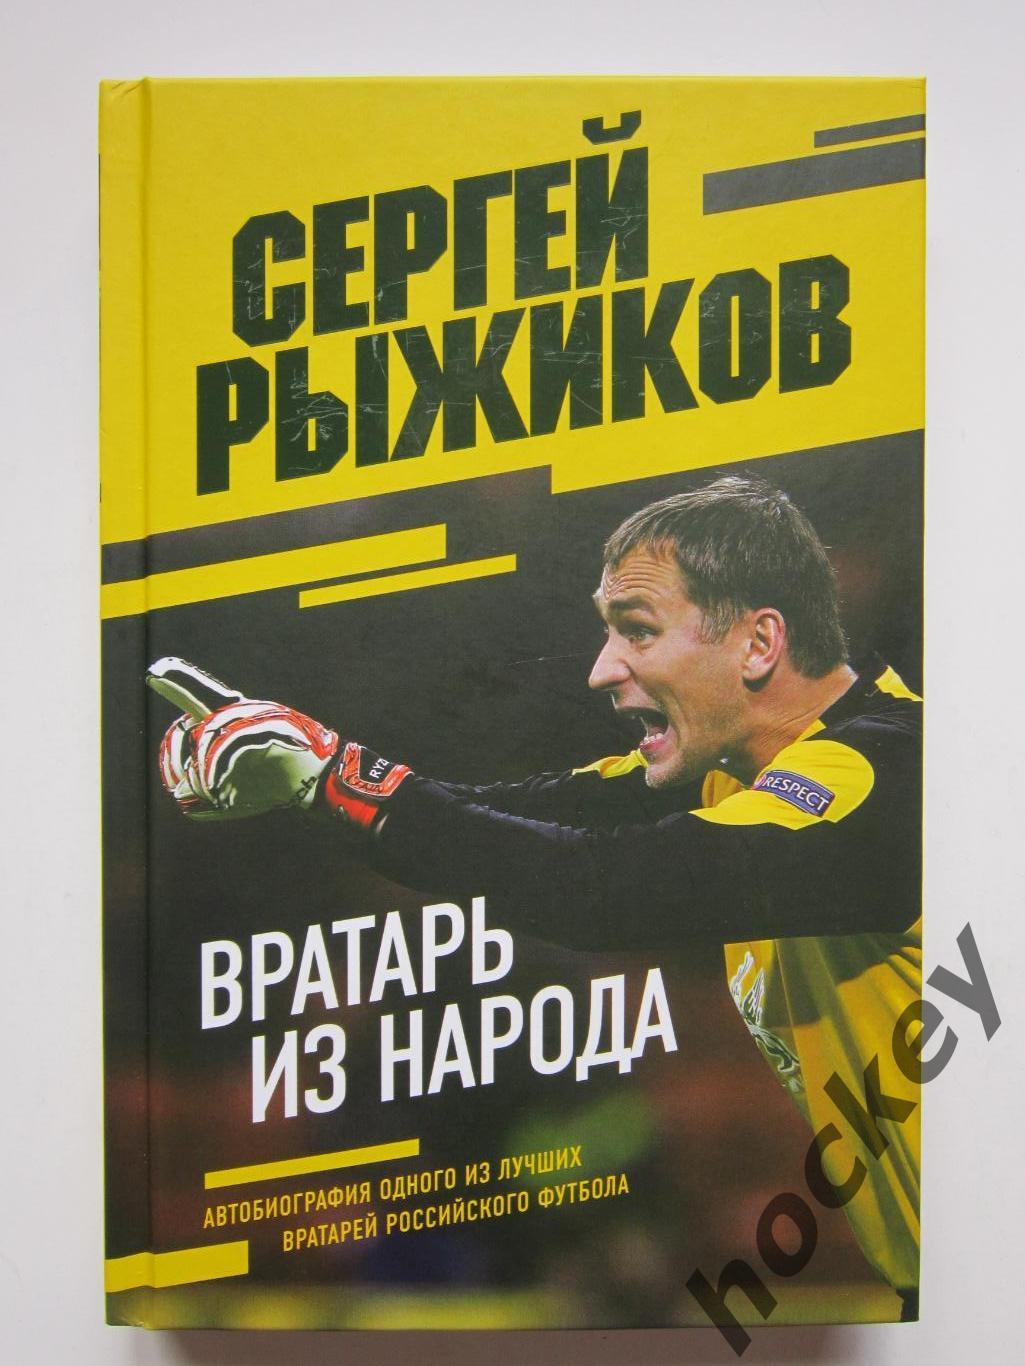 Сергей Рыжиков. Вратарь из народа. Автобиография (2022 год)